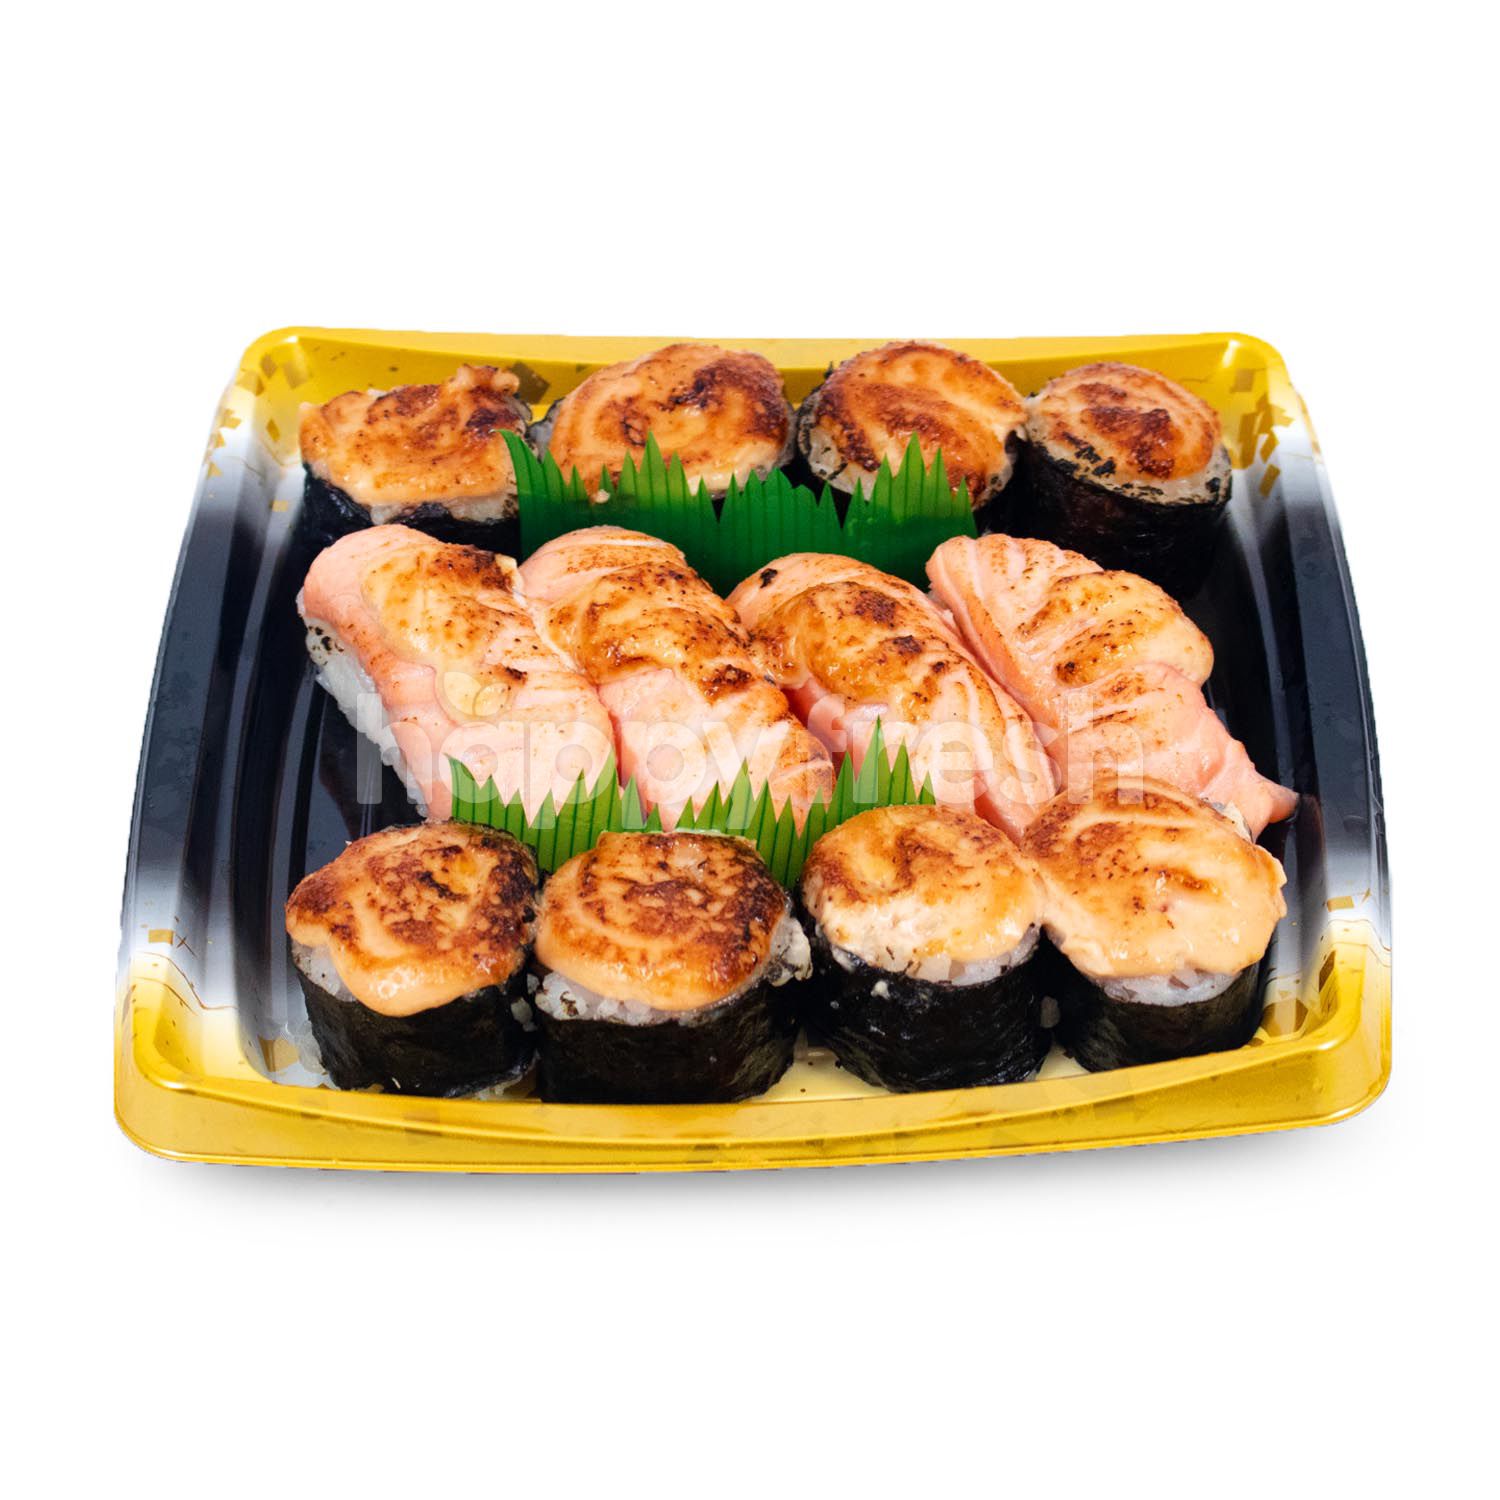 Sushi Mentai Online Delivery : Salmon, salmon belly mentai yaki, salmon